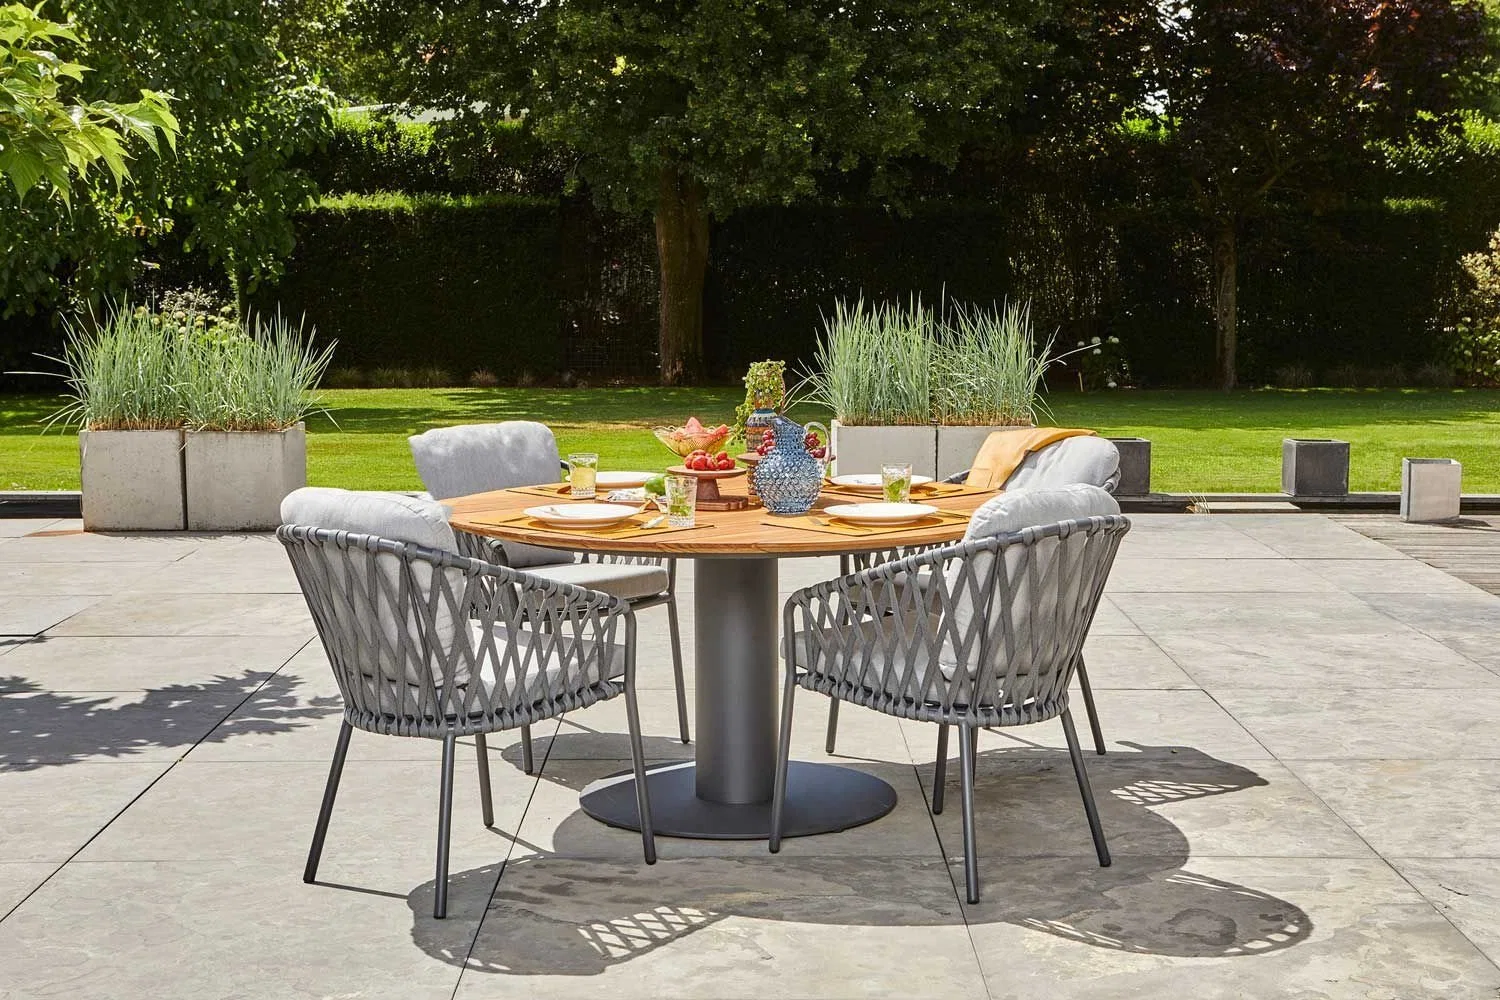 Timeless Outdoor Mix blanc Table à manger et une chaise meubles fixés pour les amateurs de style classique